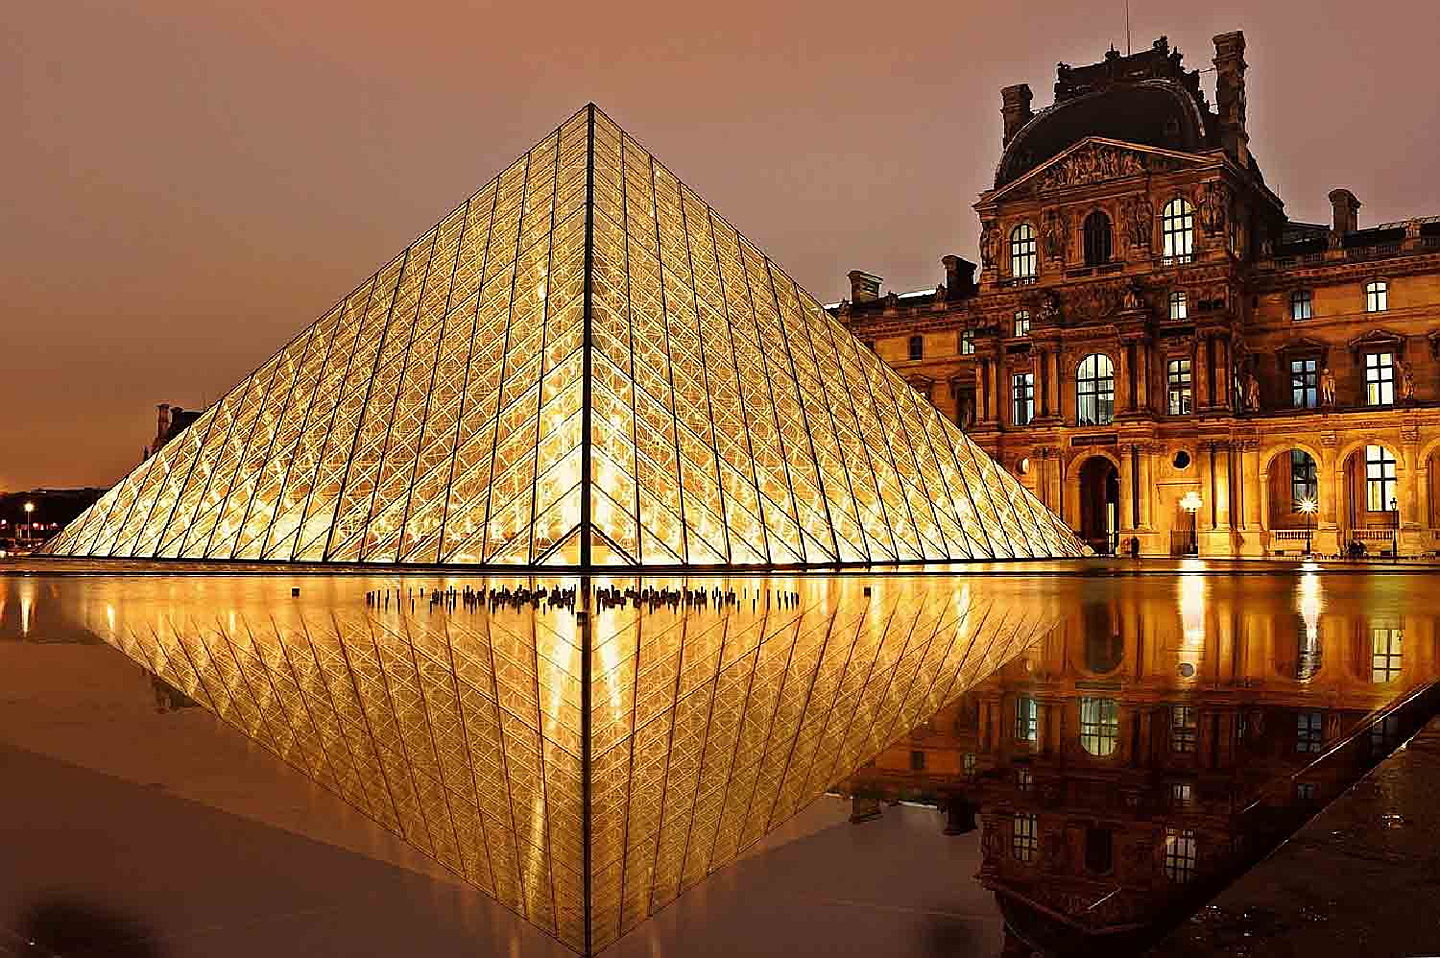  Paris
- Immobilier Paris 1er arrondissement - Musée Louvre - Engel Volkers